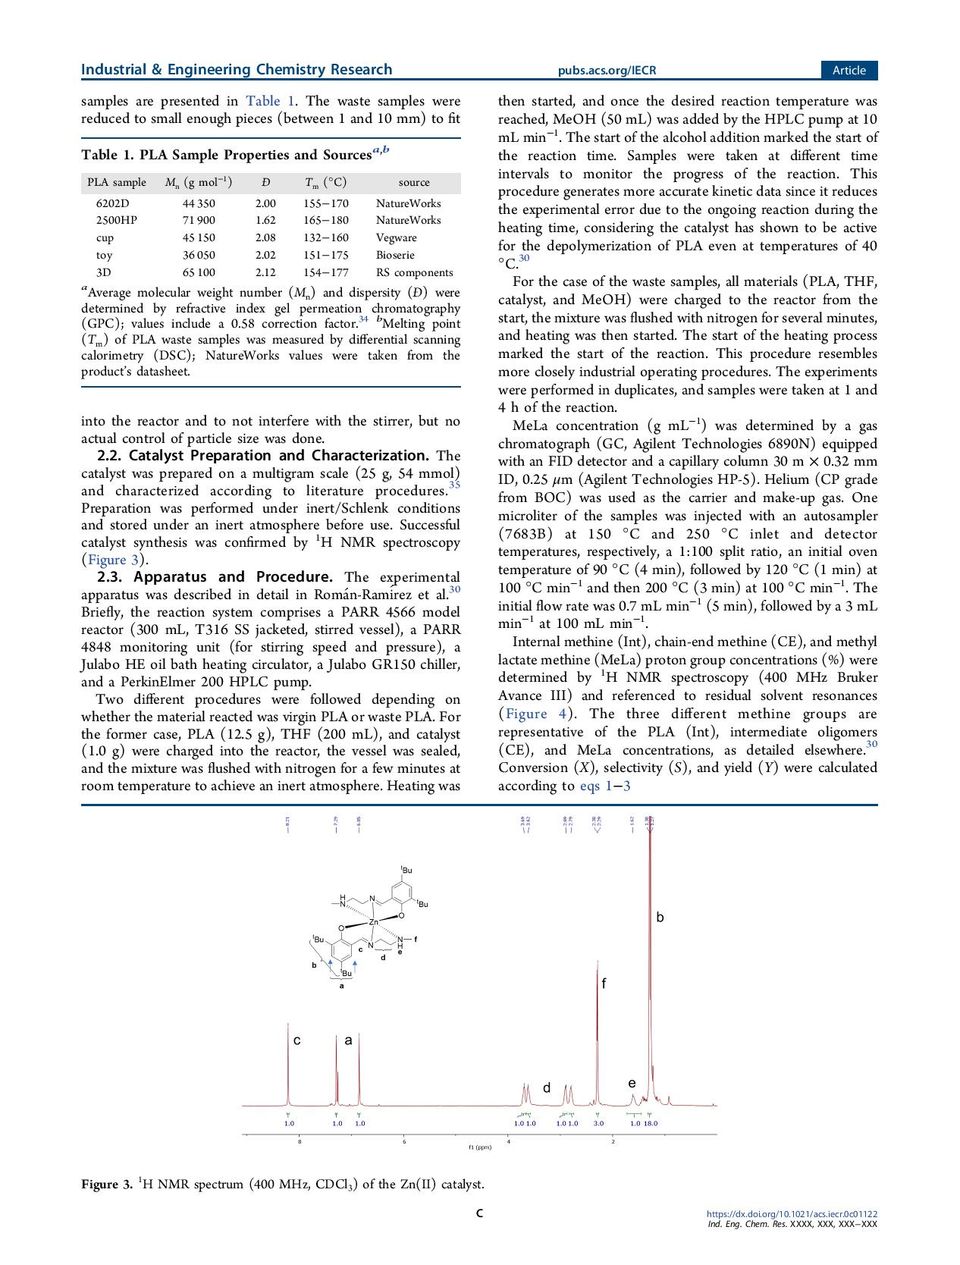 dégradation-chimique-du-l-acide-polylactique-en-fin-de-vie-en-lactate-de-méthyle-par-un-complexe-Zn-page-003